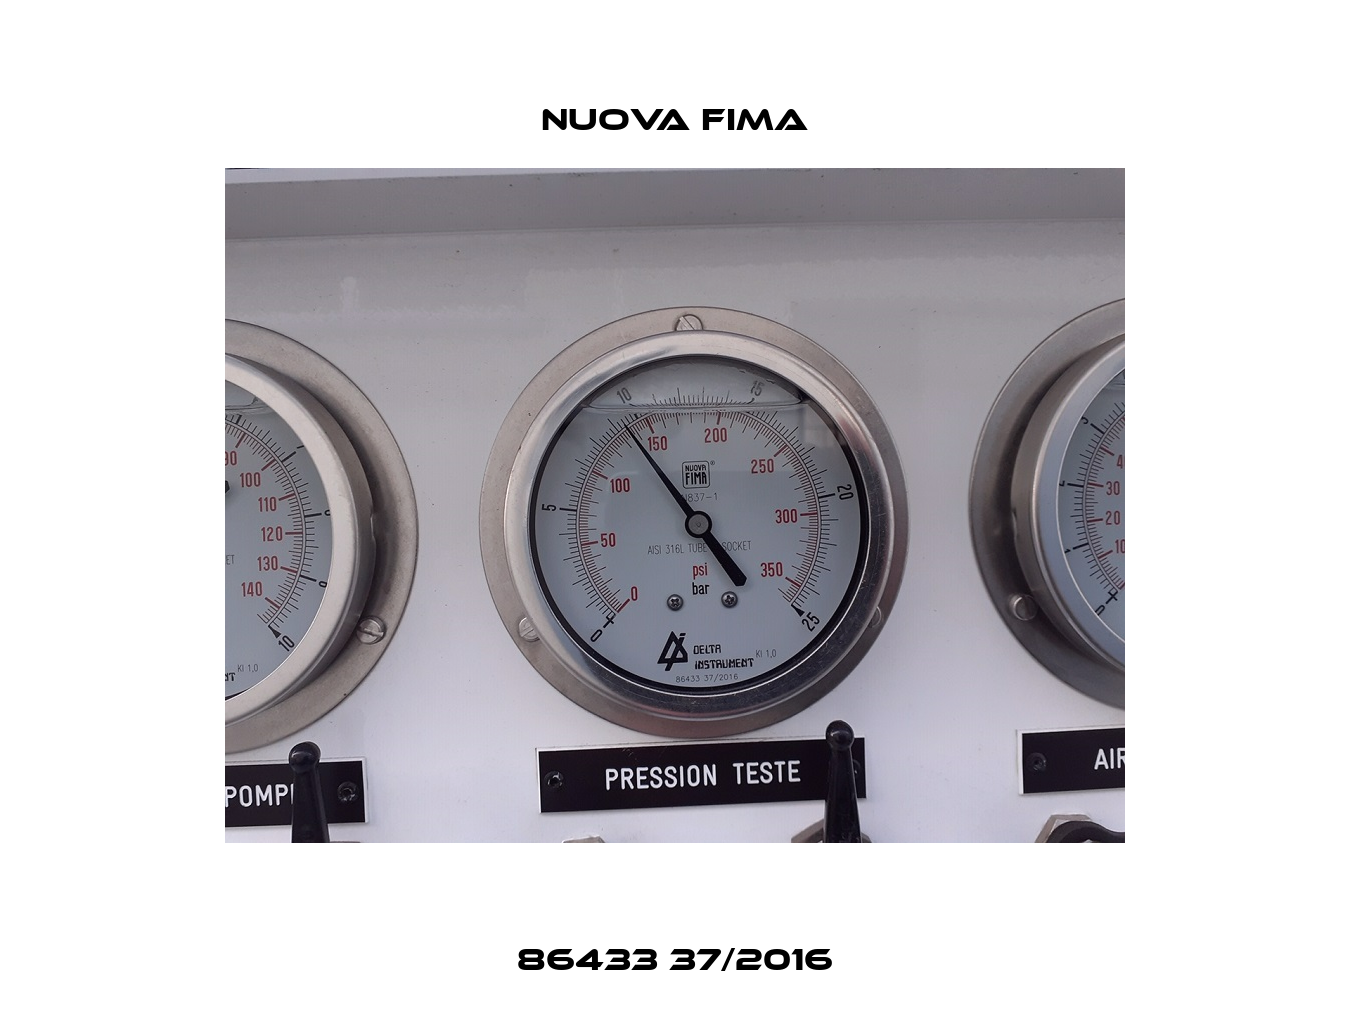 86433 37/2016 Nuova Fima